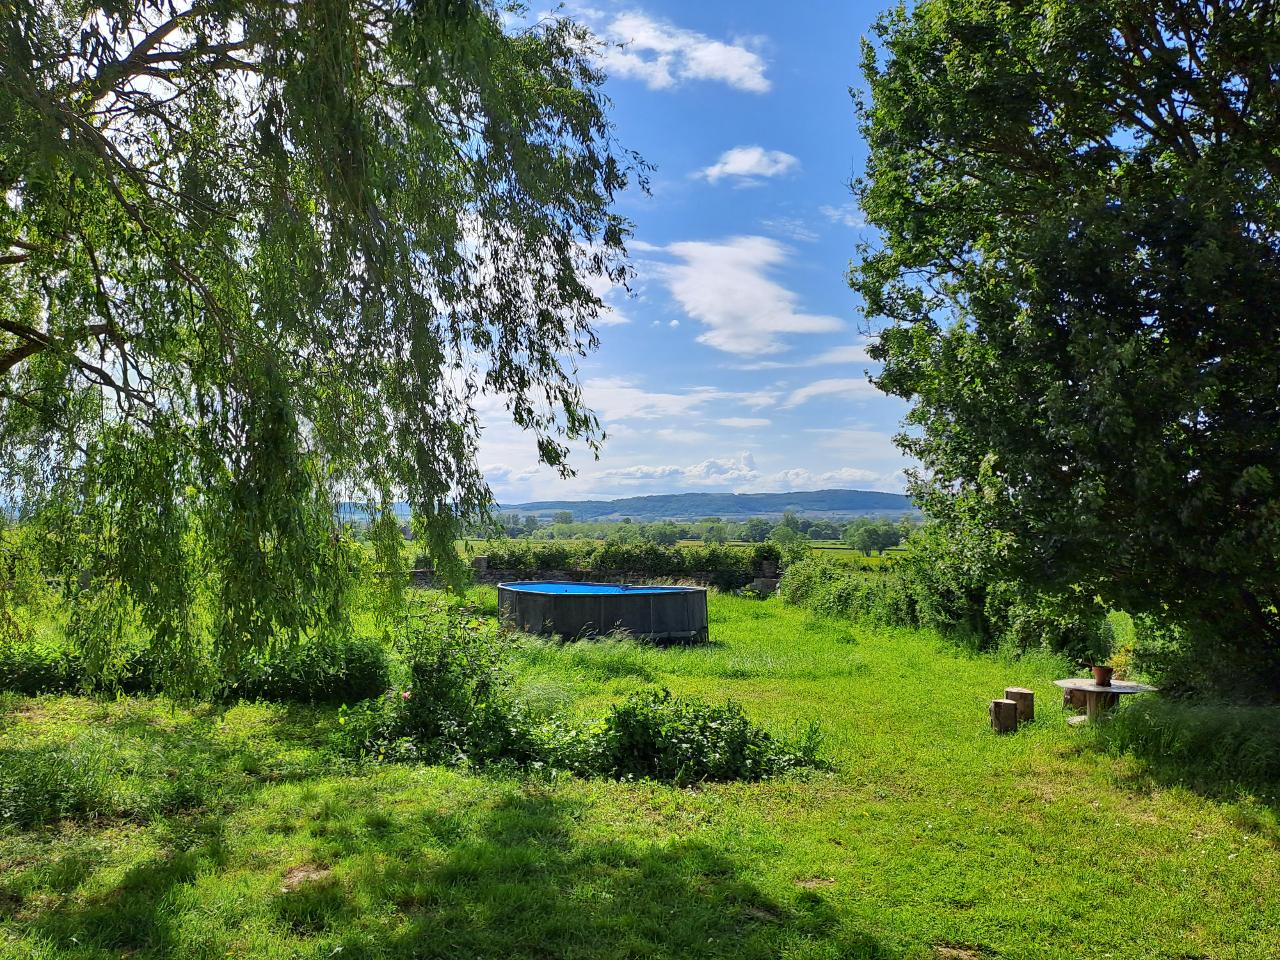 Hôte GreenGo: Gîte de campagne "La Chavoche" situé en lisière de bois et à proximité d’une rivière - Bourgogne - Image 41